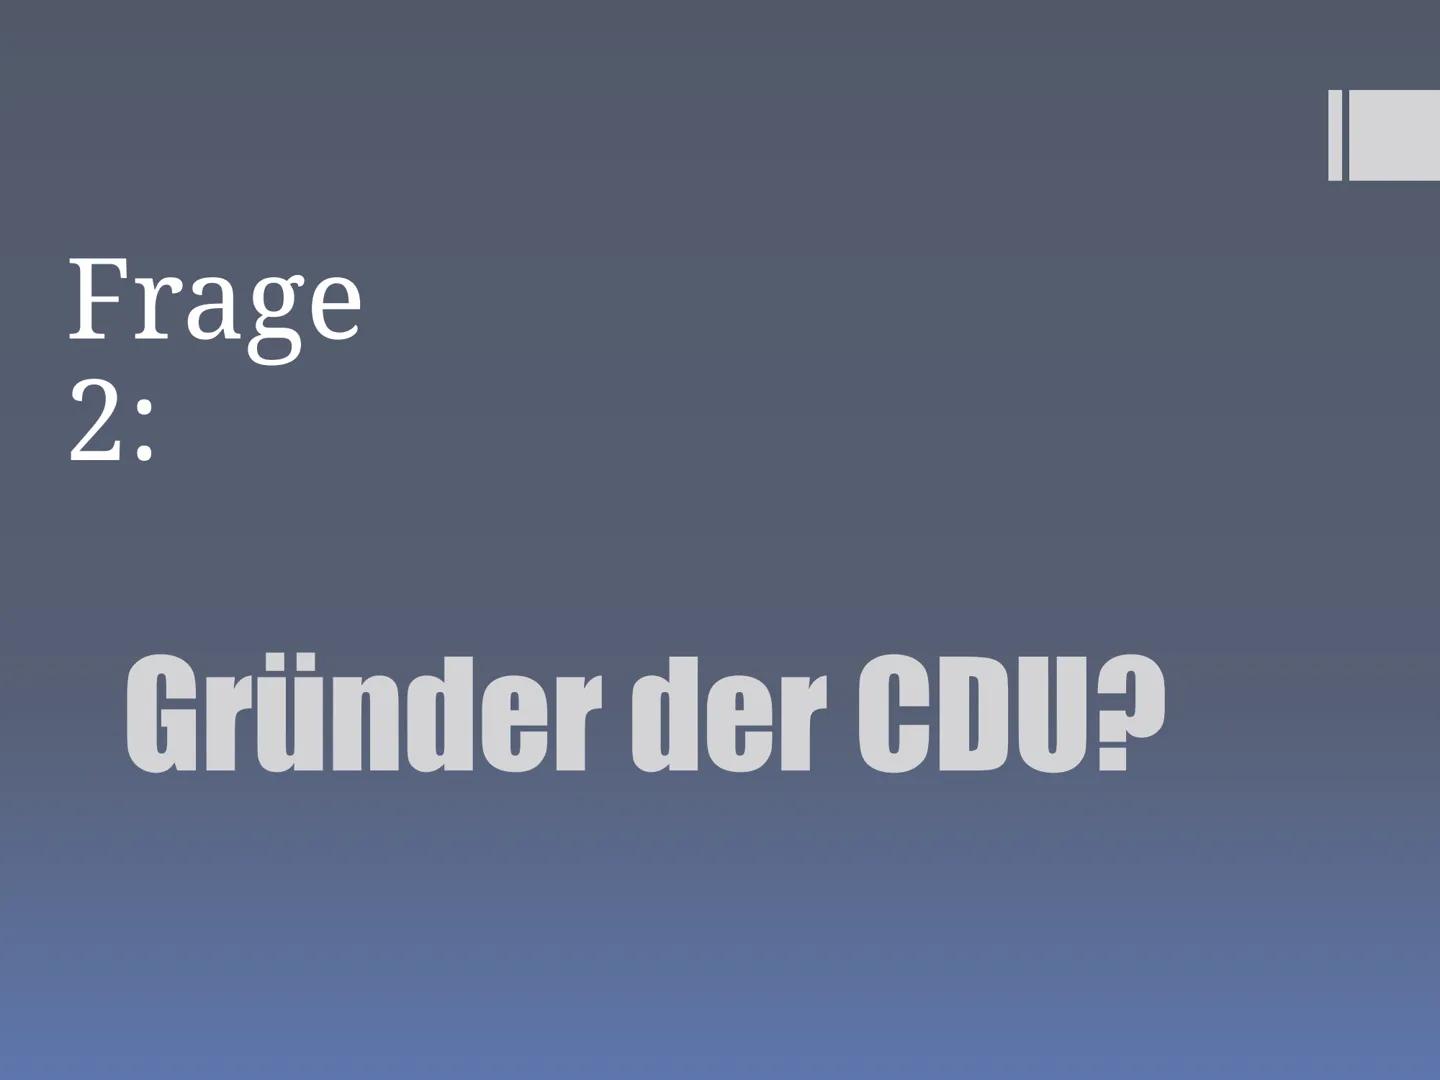 Präsentation über
CDU/CSU
Hrisiyana, Samerah, Hadil, Cosmina, Noor, Nada ■
■
■
■
■
Inhaltsverzeichnis:
Wer sind CDU und CSU?
Aufgaben im Bun